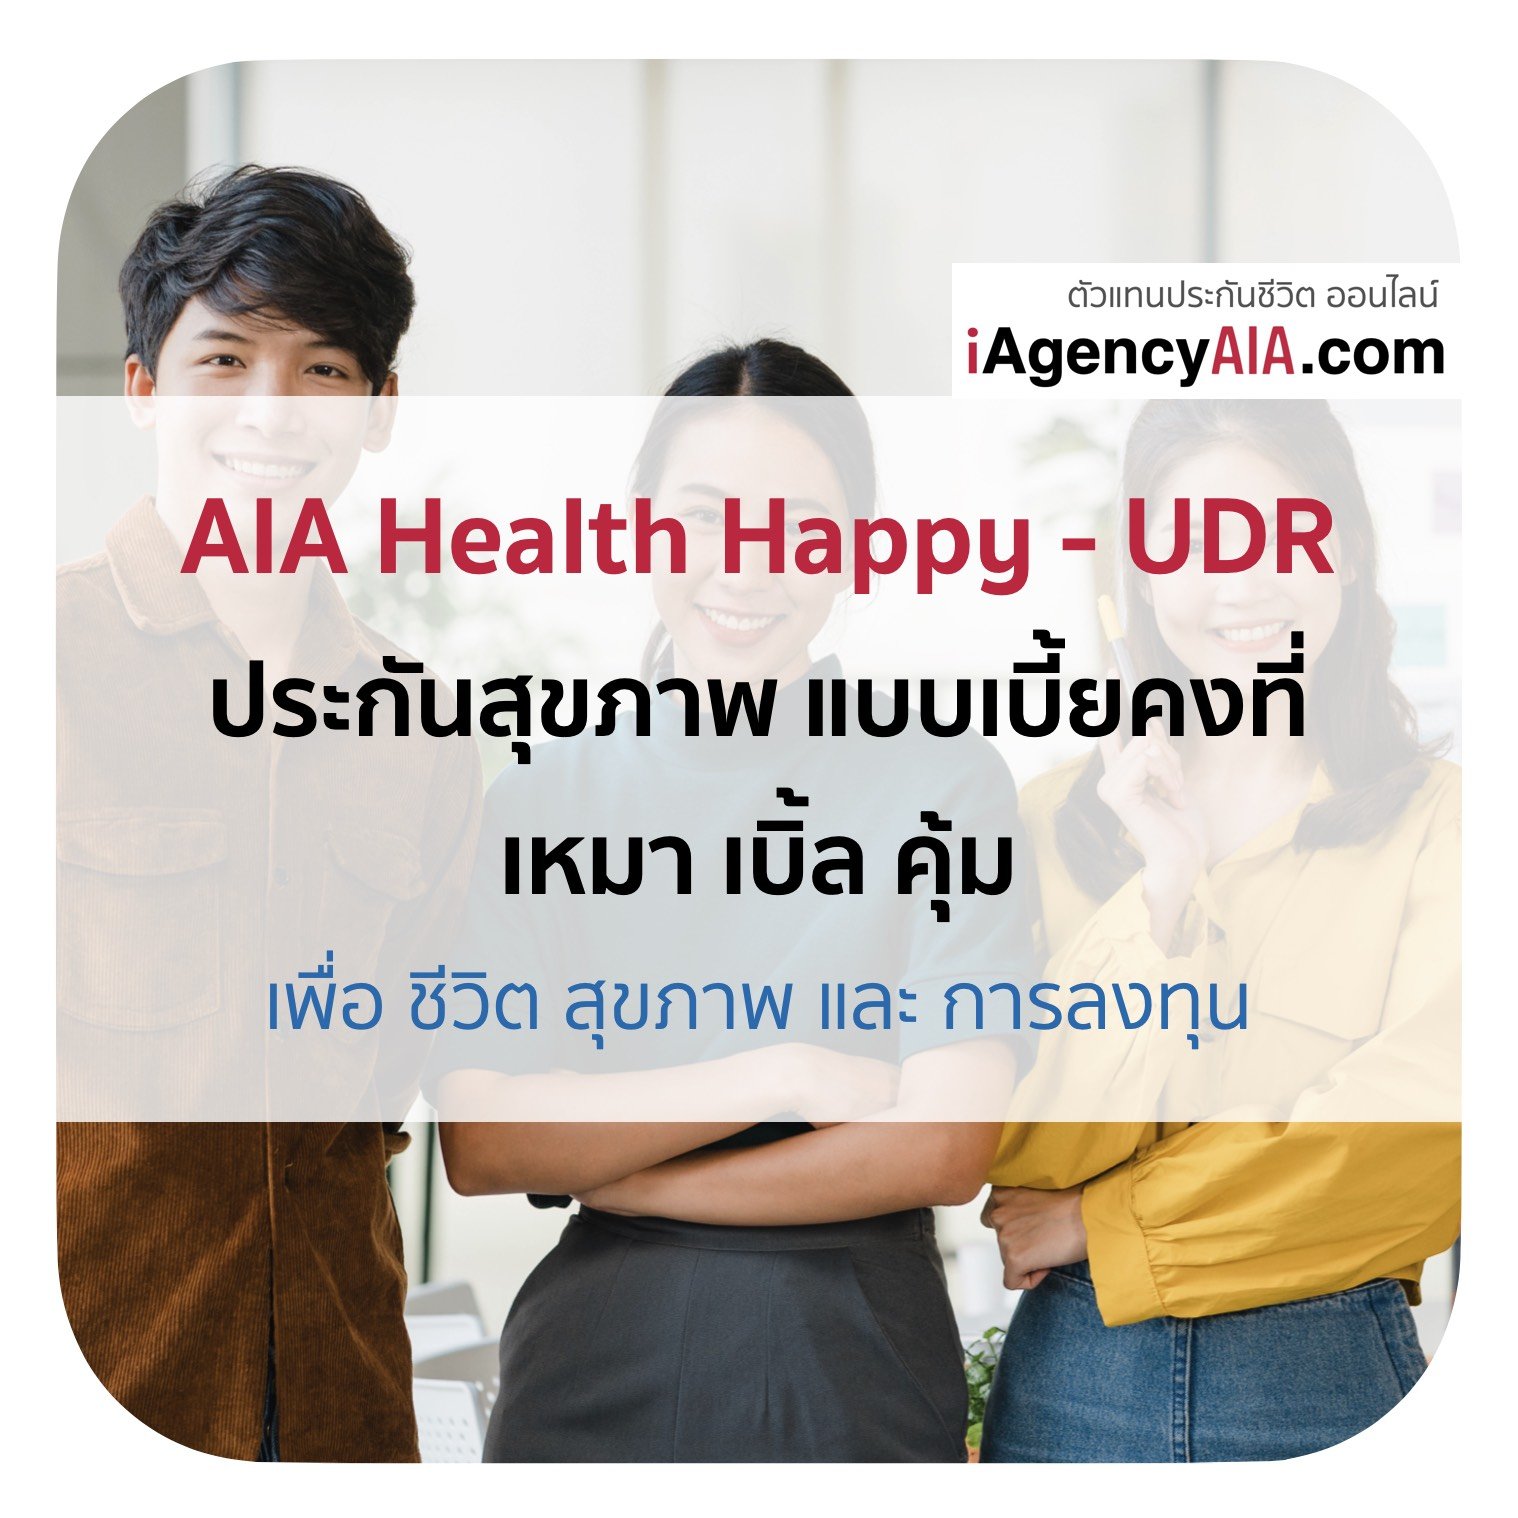 AIA Health Happy UDR ประกันสุขภาพแบบเบี้ยคงที่ และ ไม่จ่ายทิ้ง